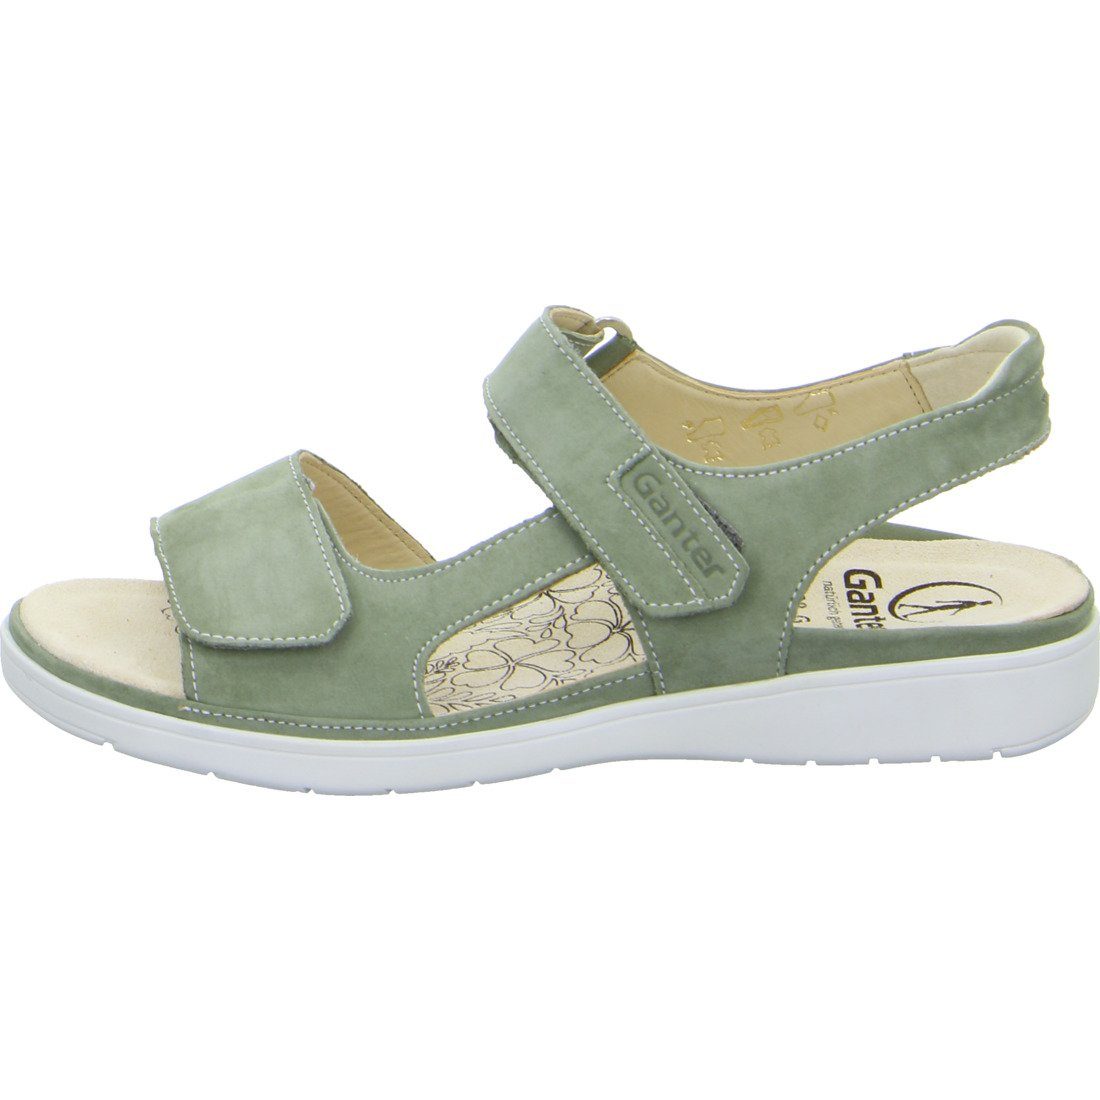 Ganter Ganter Schuhe, Sandalette - Nubuk grün Damen Gina Sandalette 048812